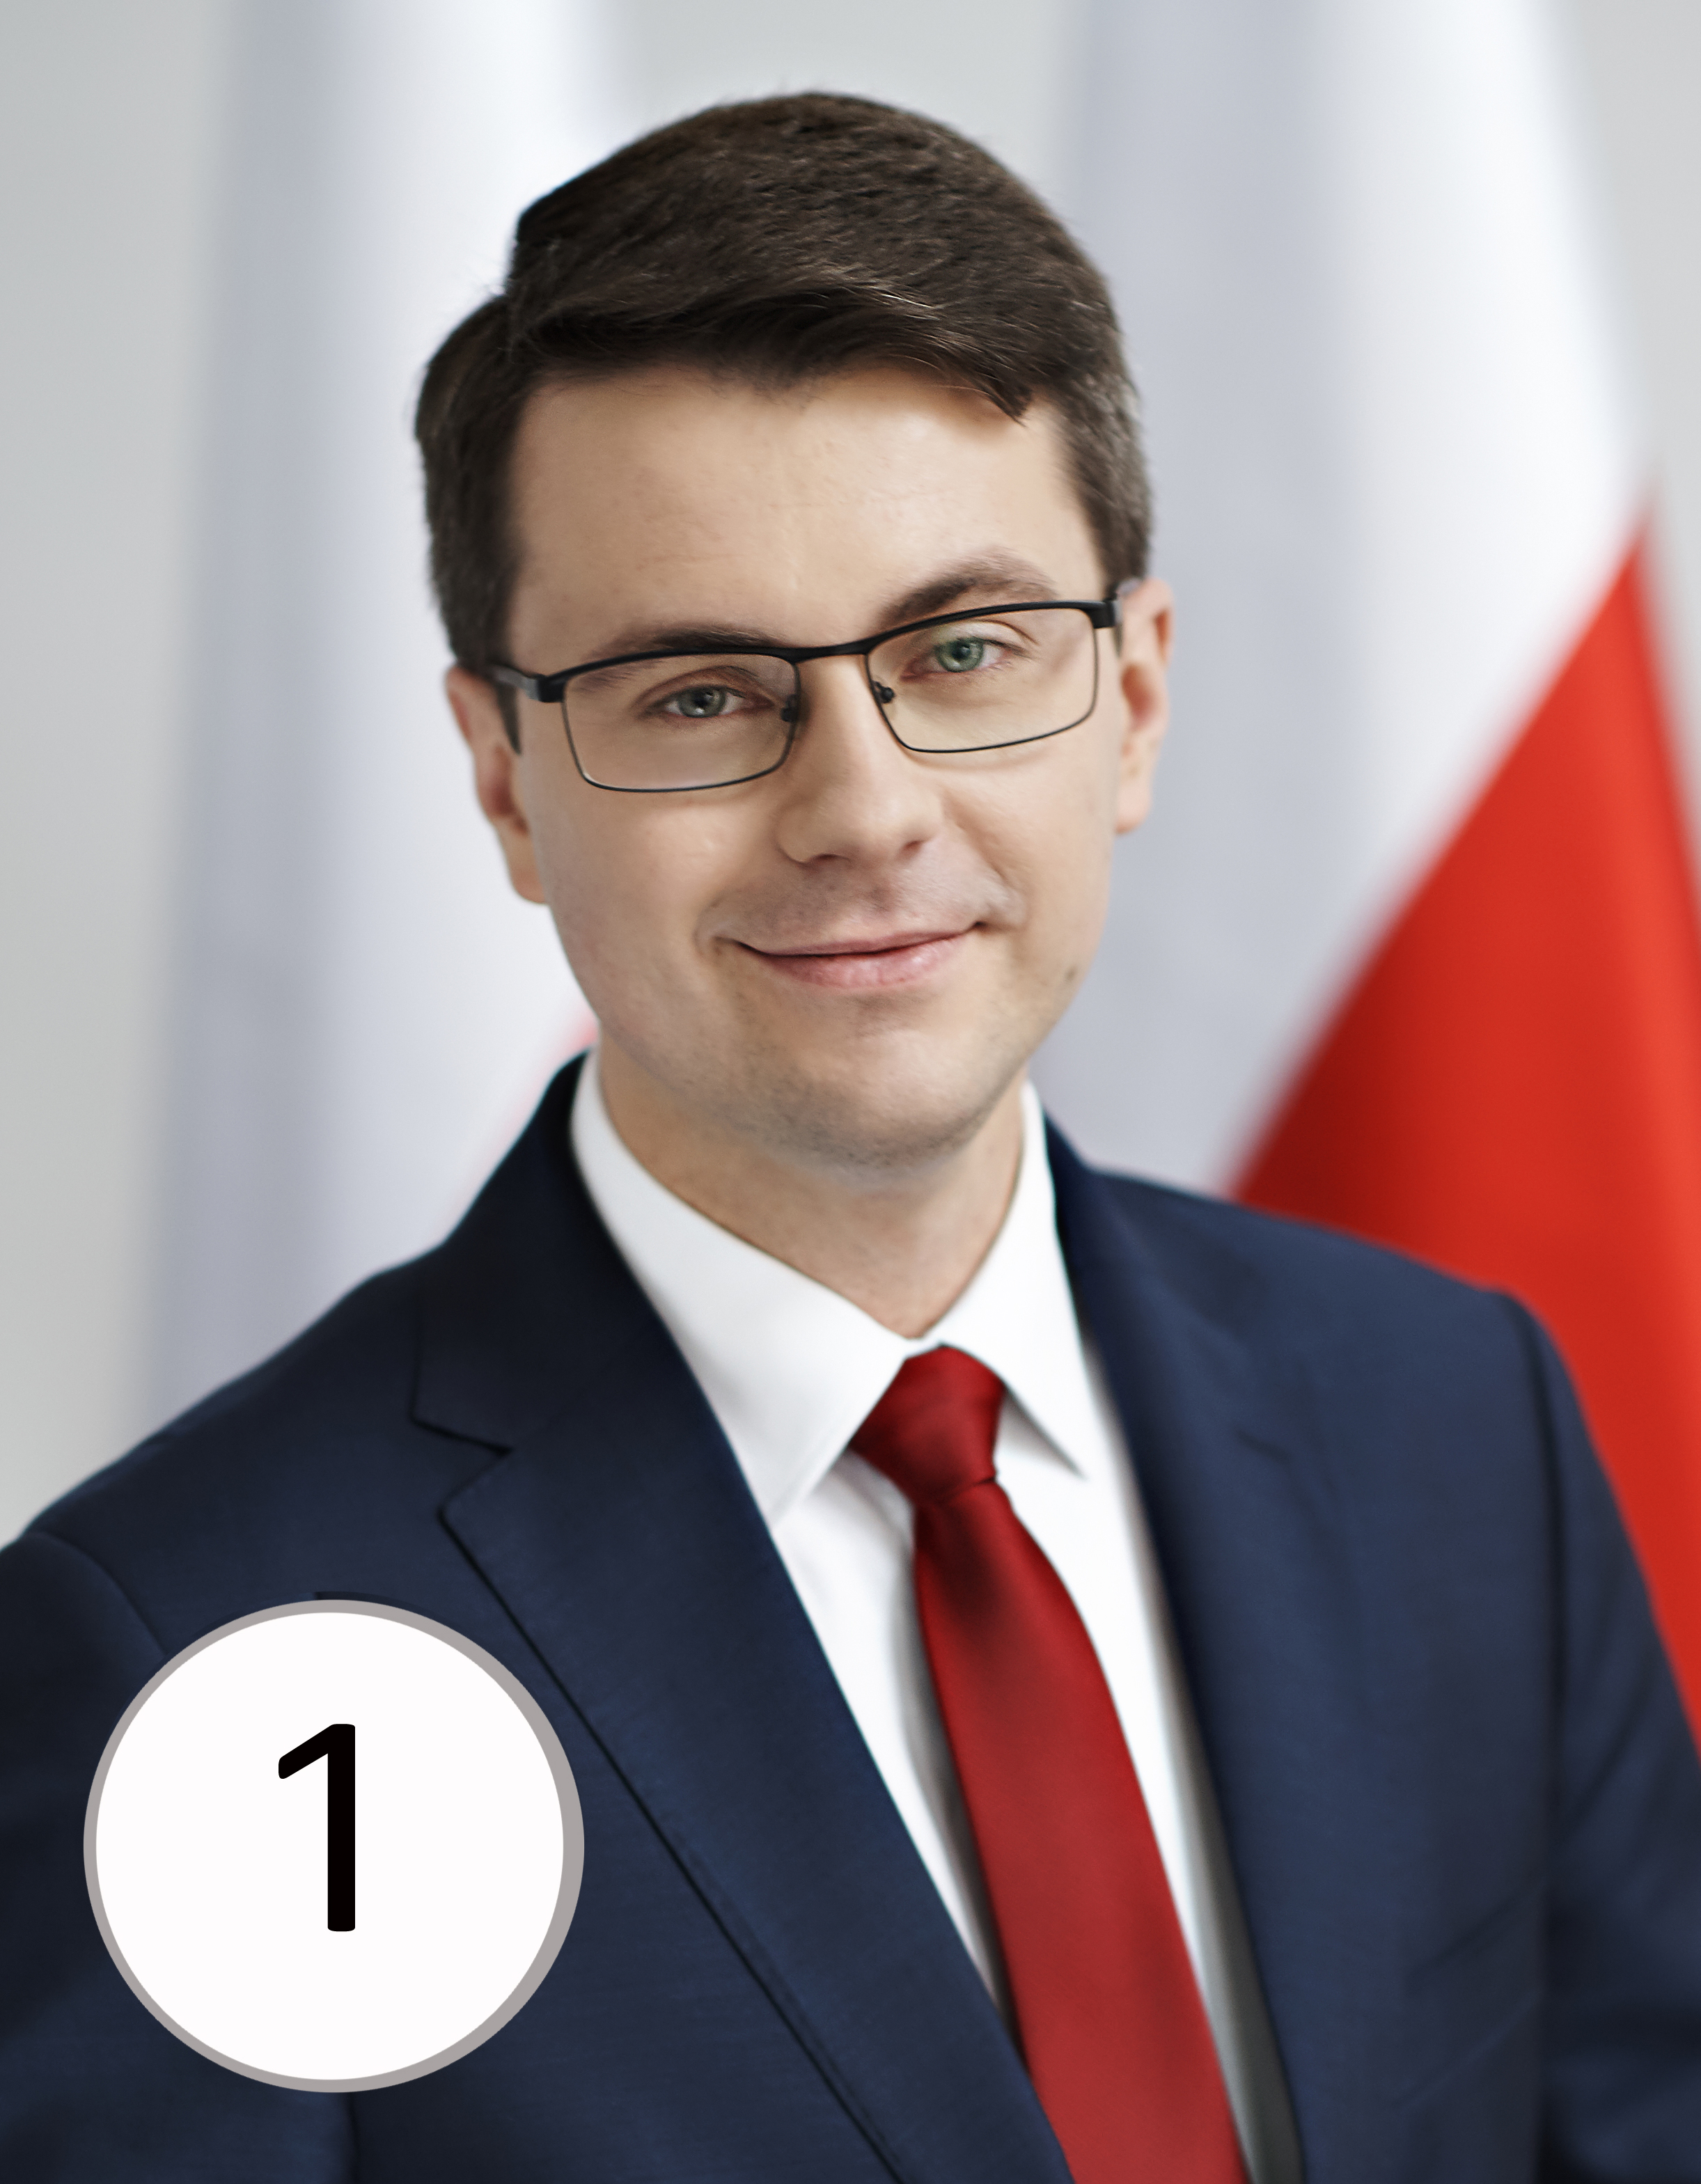 Poseł Piotr Müller zwycięzcą plebiscytu Osobowość Roku 2018